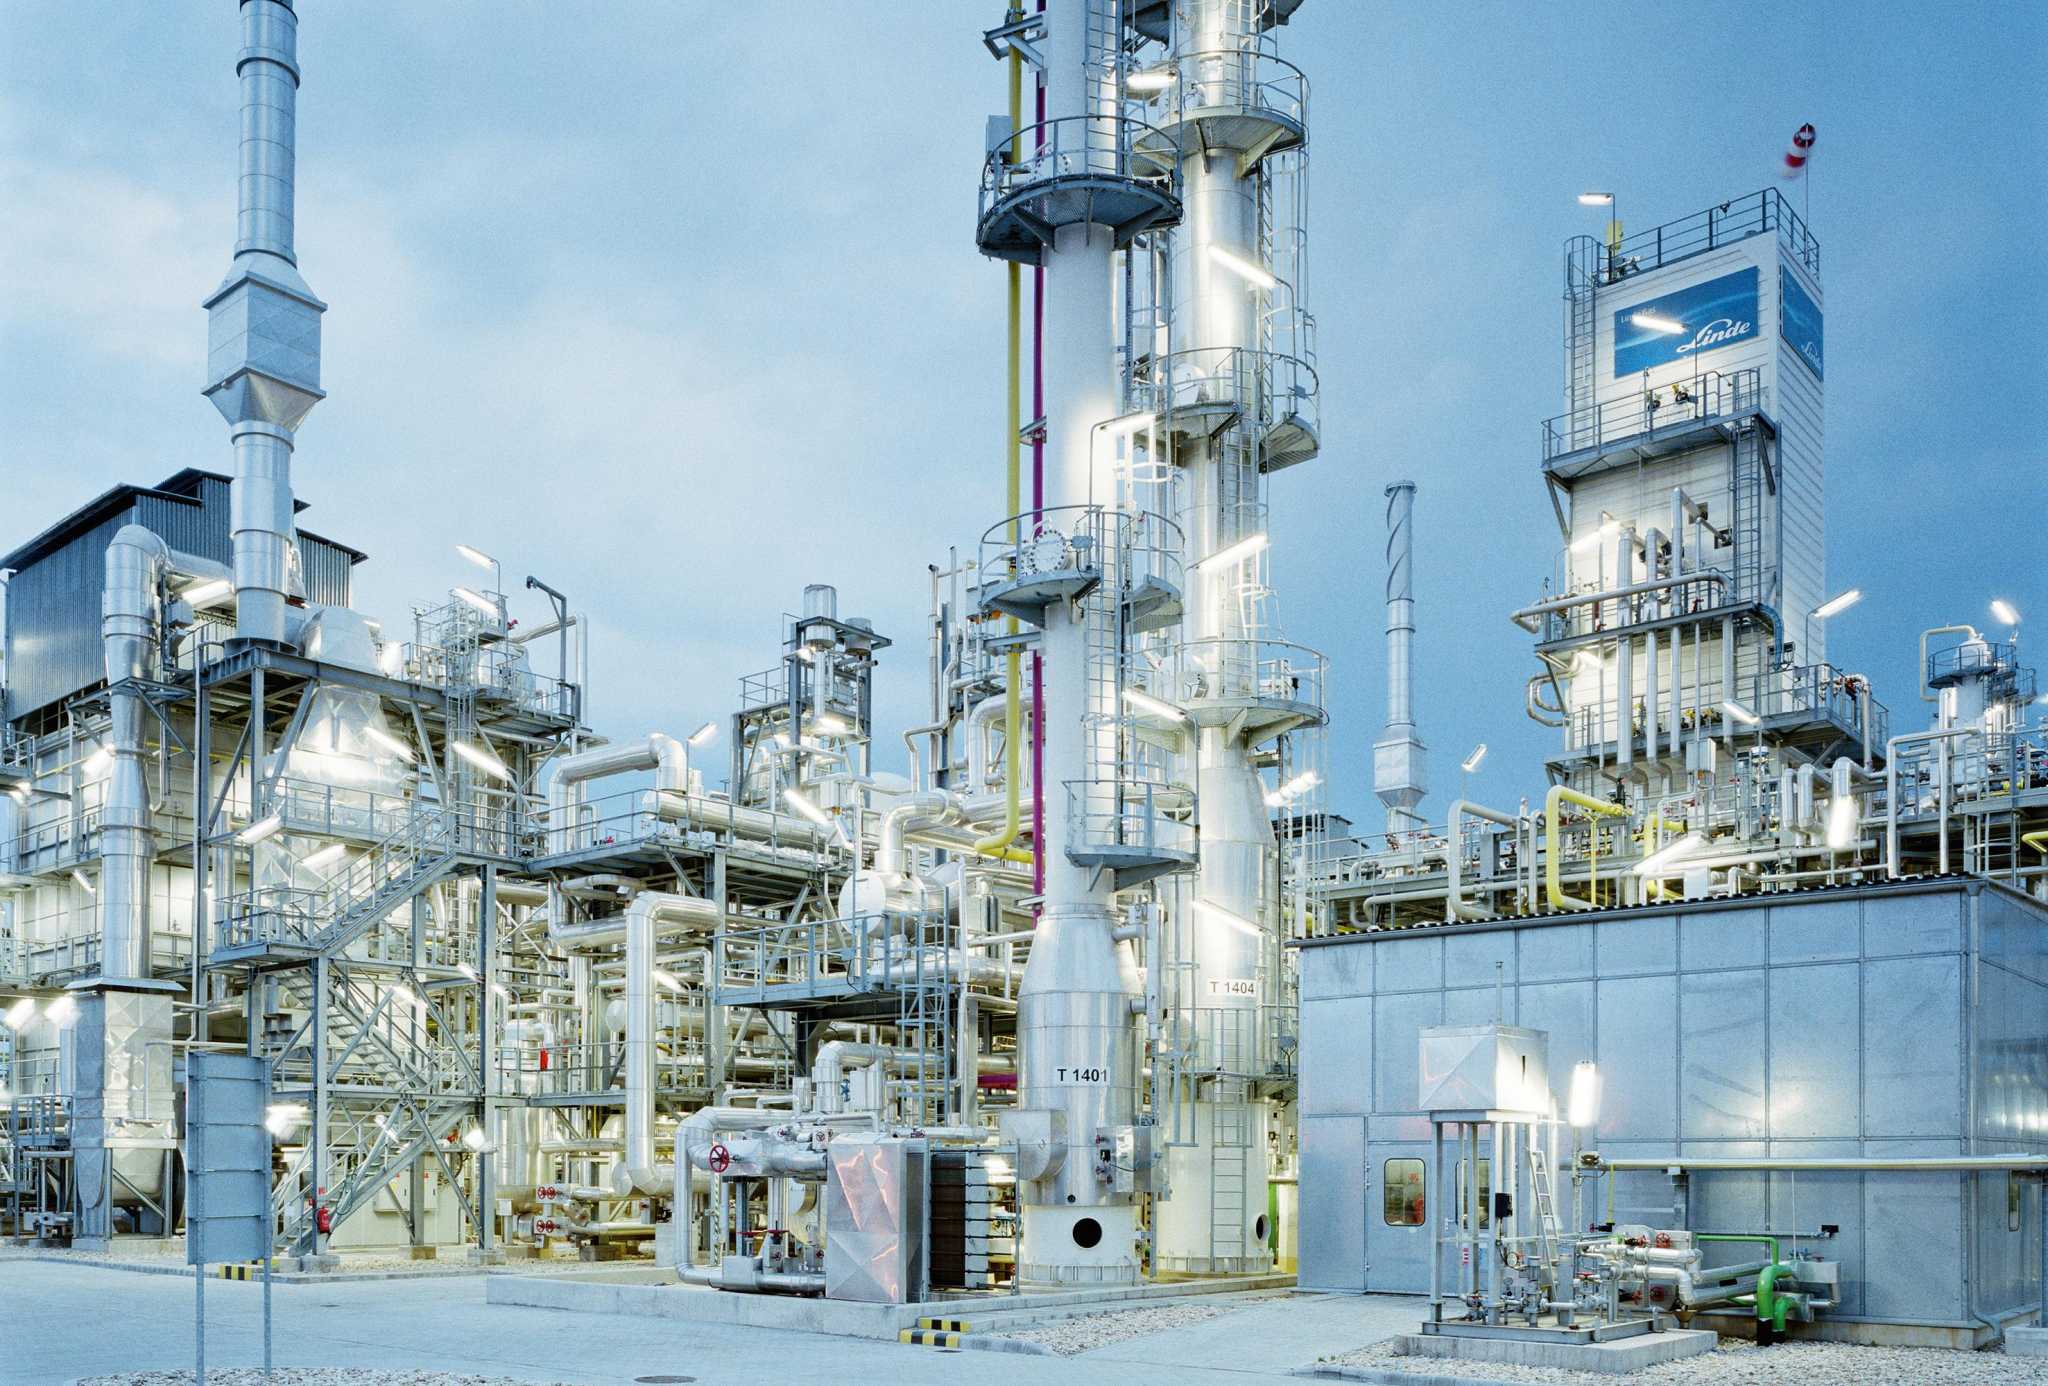 Danbury company to build hydrogen plant in La.